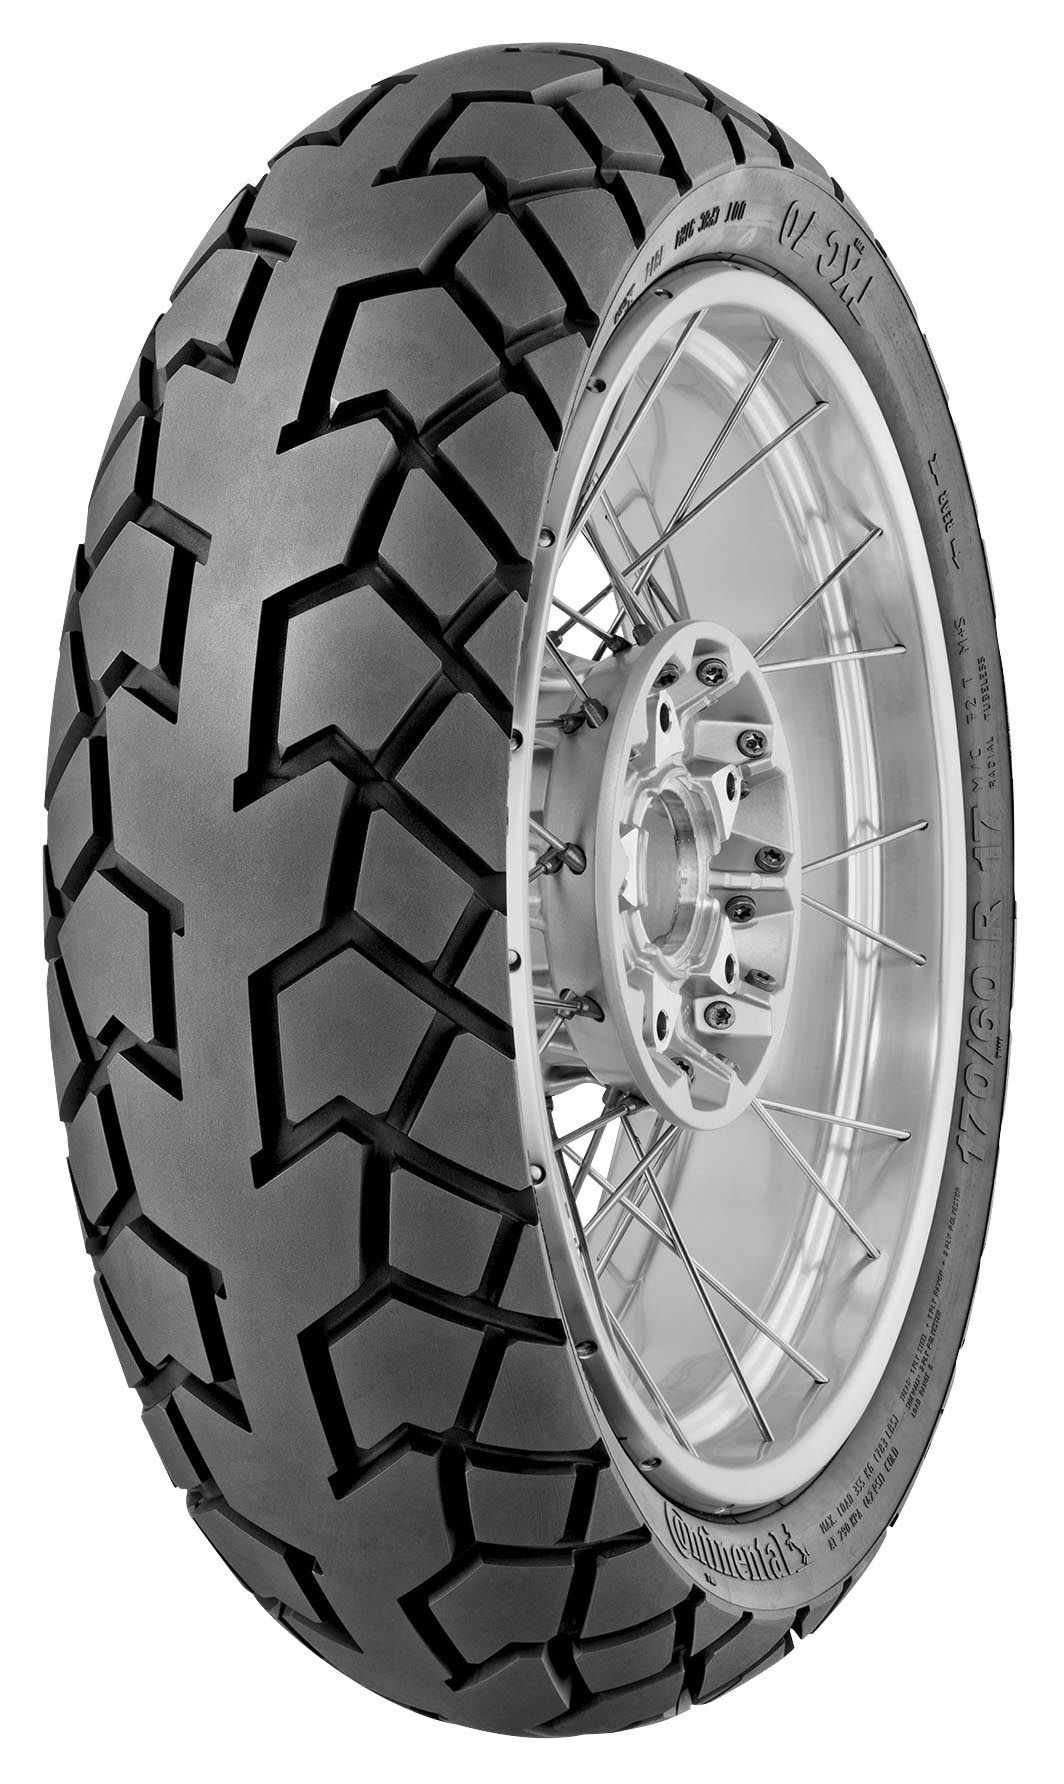 CONTINENTAL TKC70 Dual Sport Front & Rear Tire Set, 120/90R17 64T & 4.00R18 64T